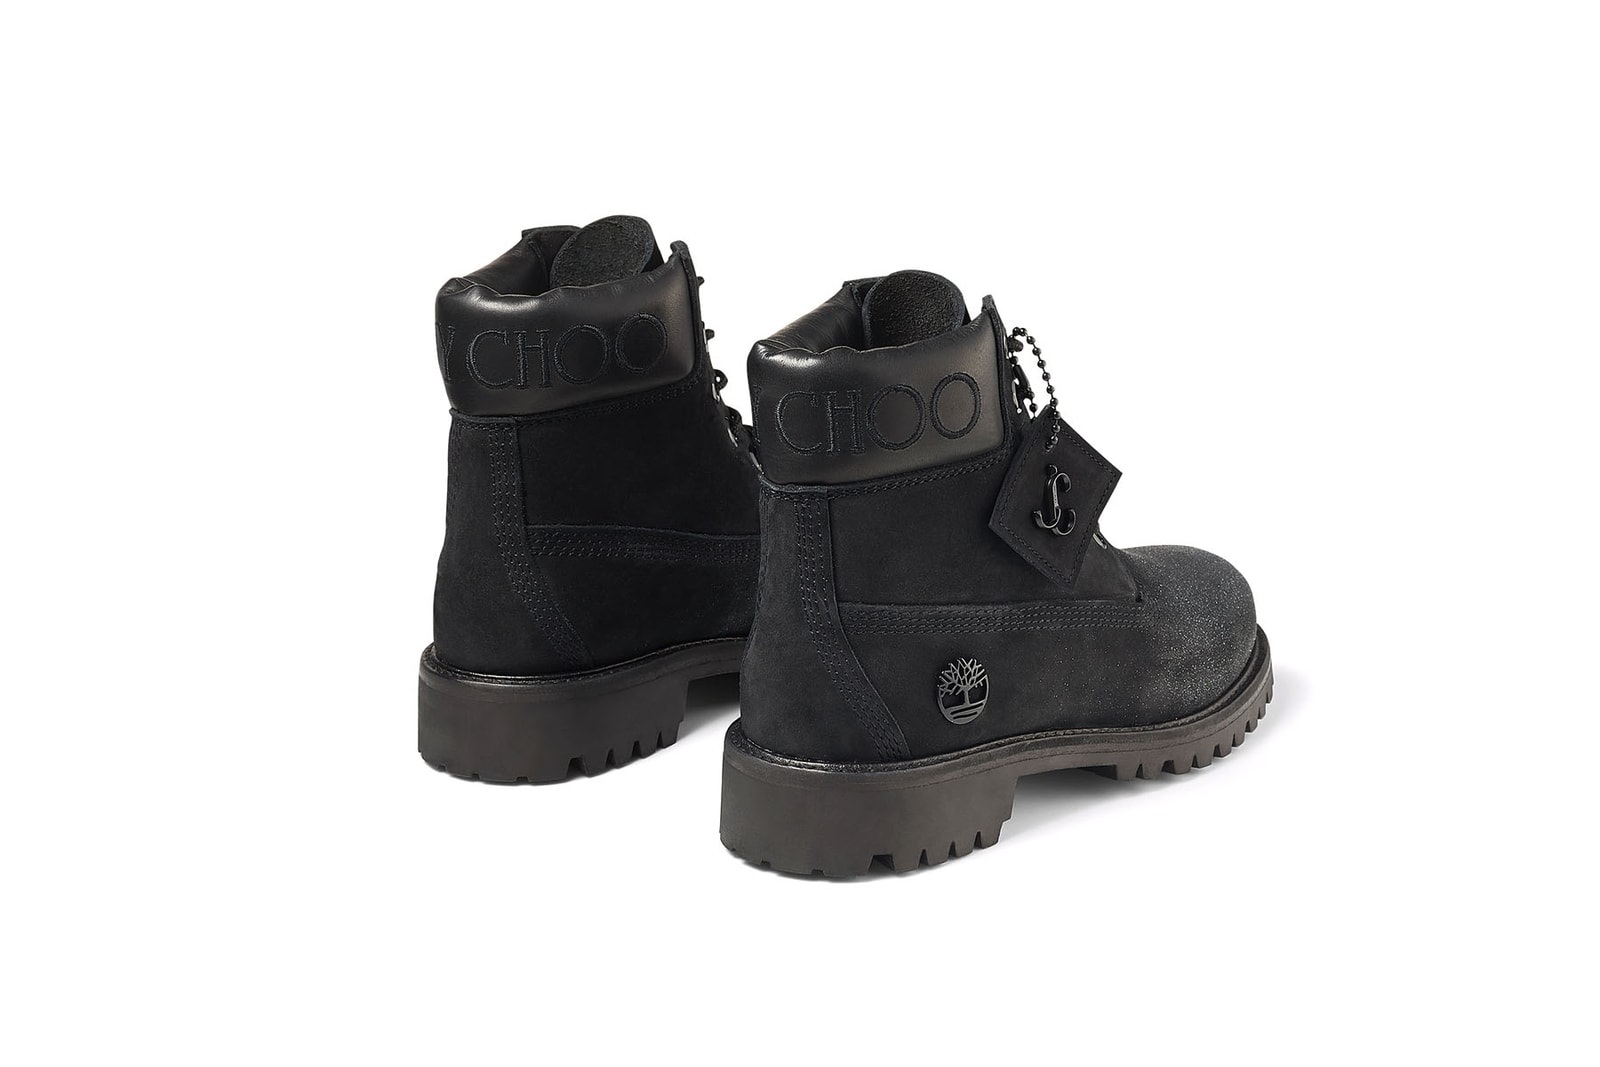 ジミーチュウ x ティンバーランドの最新コラボフットウェアが登場 Jimmy Choo x Timberland releases latest collab footwear